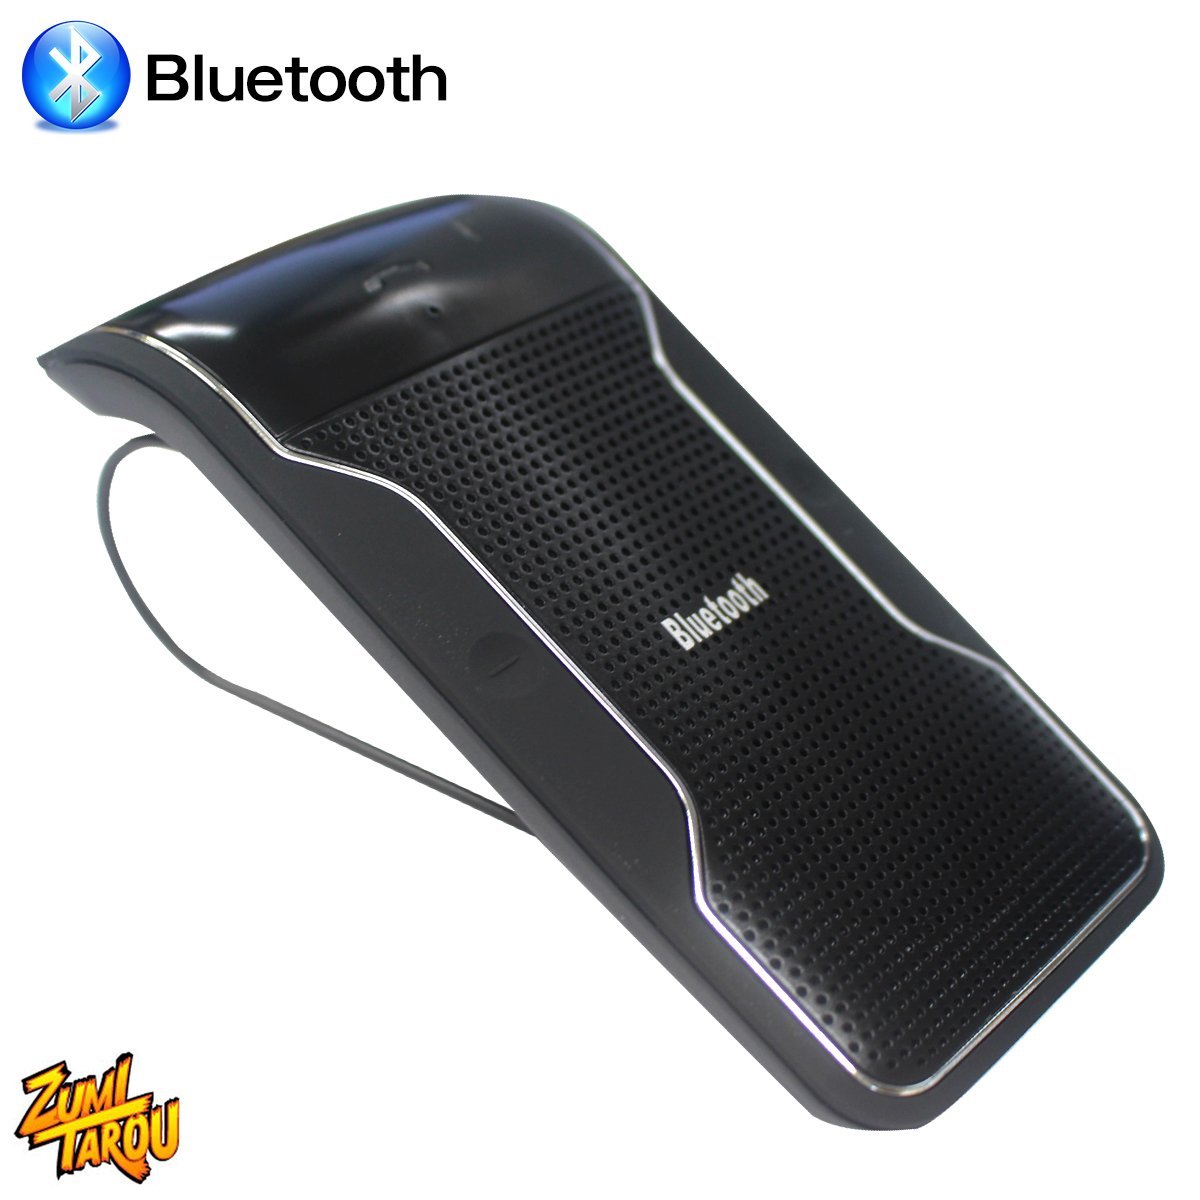 限定版 SALE 69%OFF 車載用 ハンズフリー Bluetooth ワイヤレス通話 音楽再生 ishowgame.com ishowgame.com